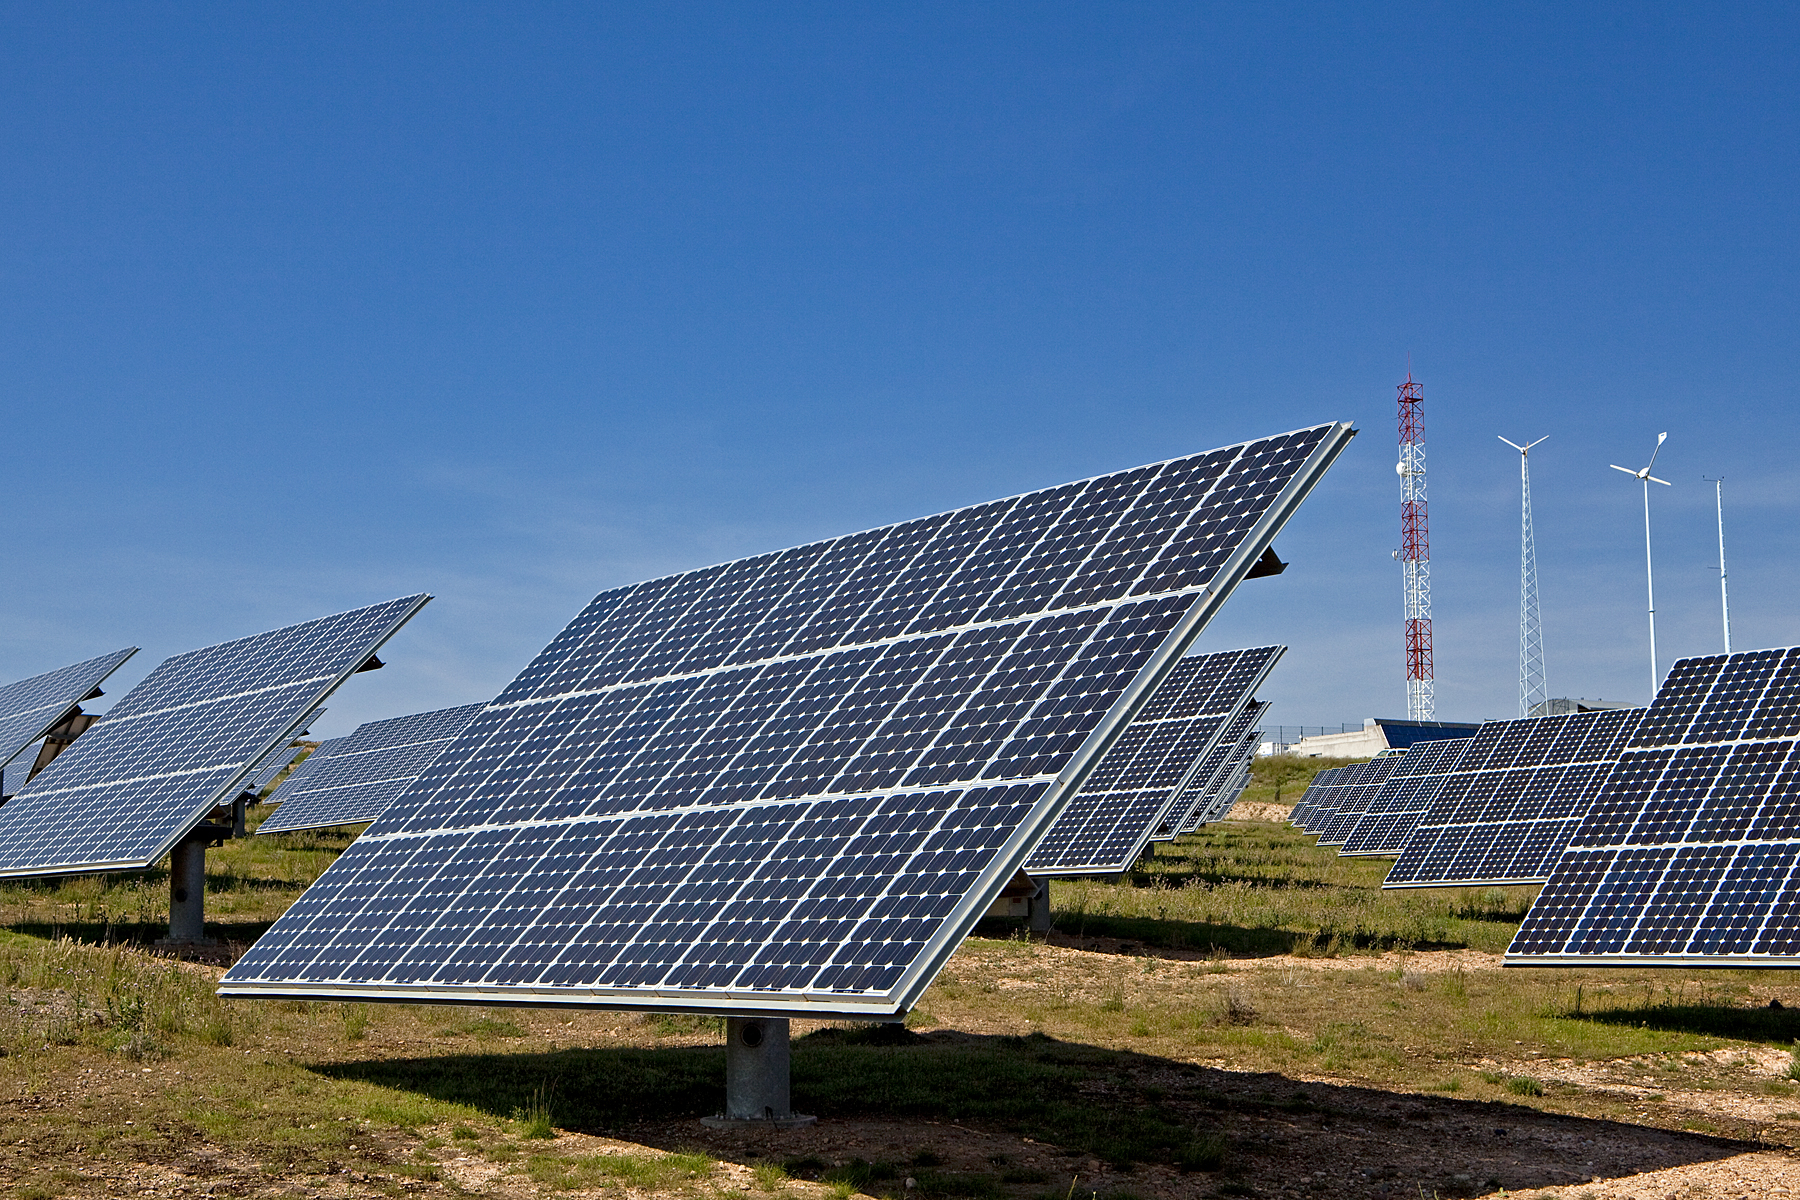 Proyecto “Meseta de Los Andes” será la planta fotovoltaica más grande de la región de Valparaíso